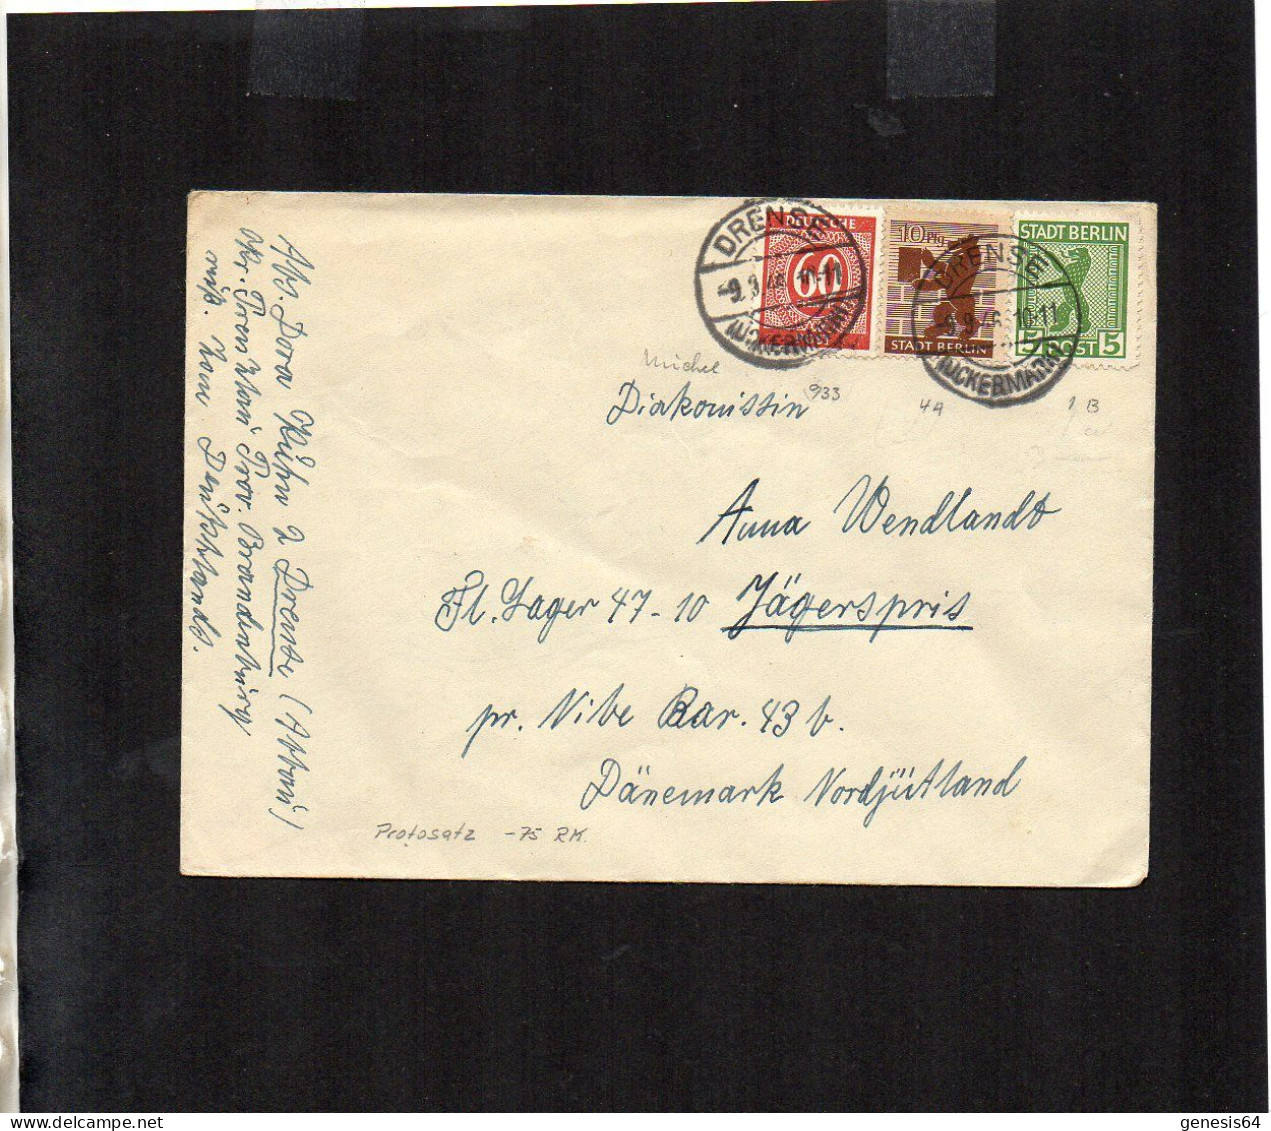 Berlin Brandenburg - Auslandsbrief Mit Mischfrankatur - Drense ==> Dänemark 1.7.46 - P2 (1ZKSBZ052) - Berlin & Brandebourg